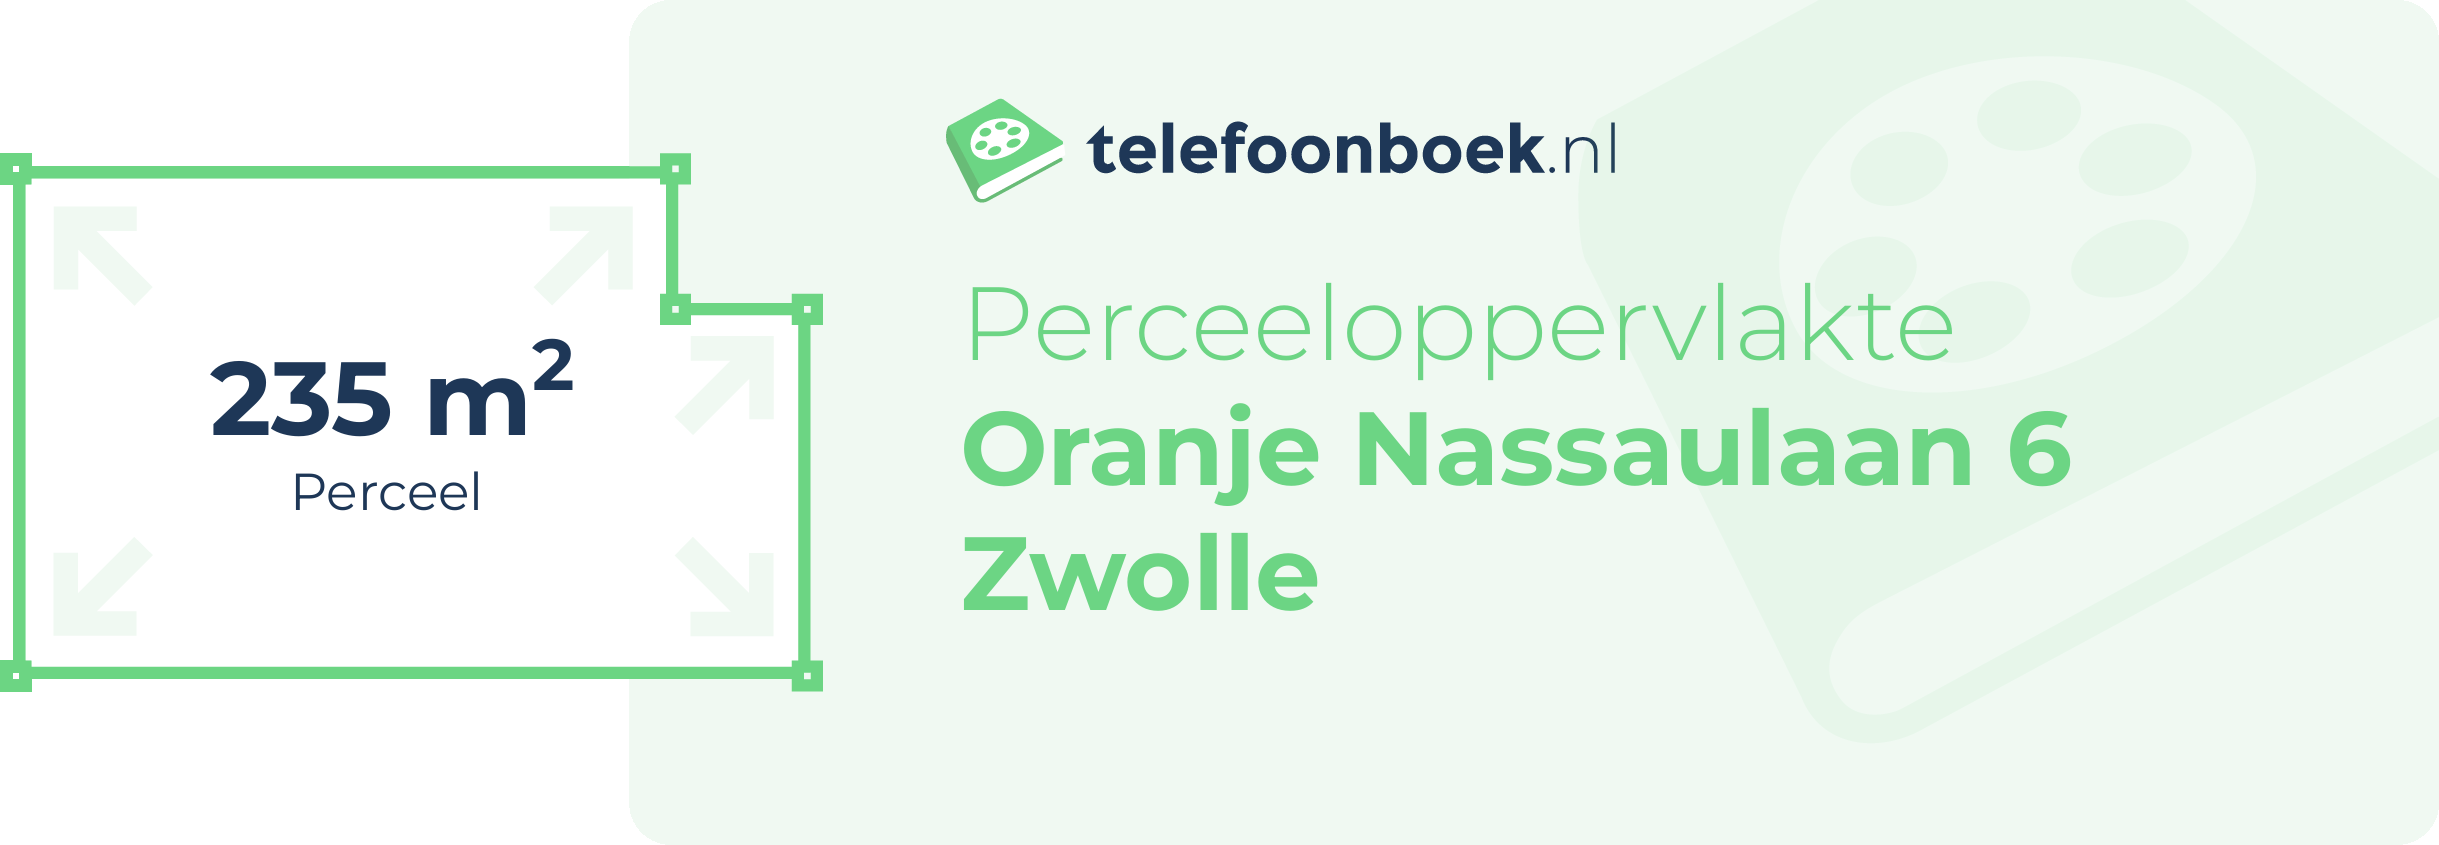 Perceeloppervlakte Oranje Nassaulaan 6 Zwolle